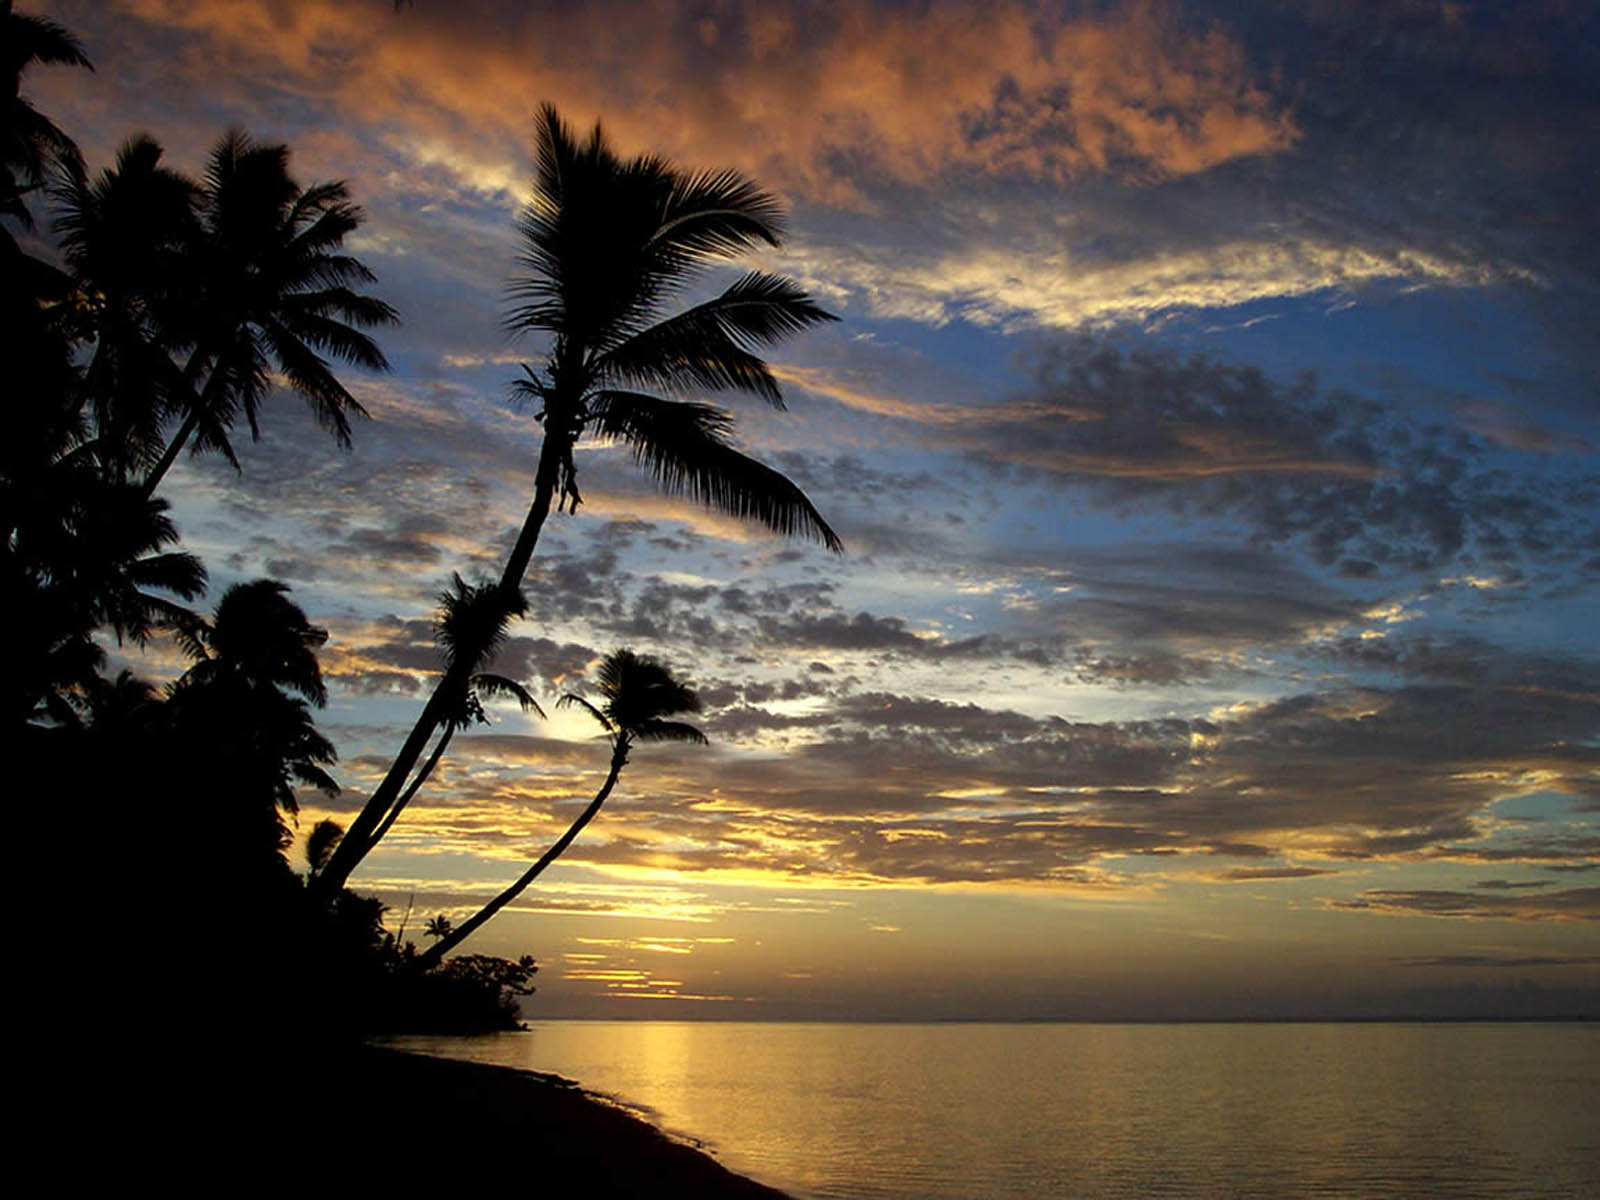 The Island Sunset Wallpaper Desktop